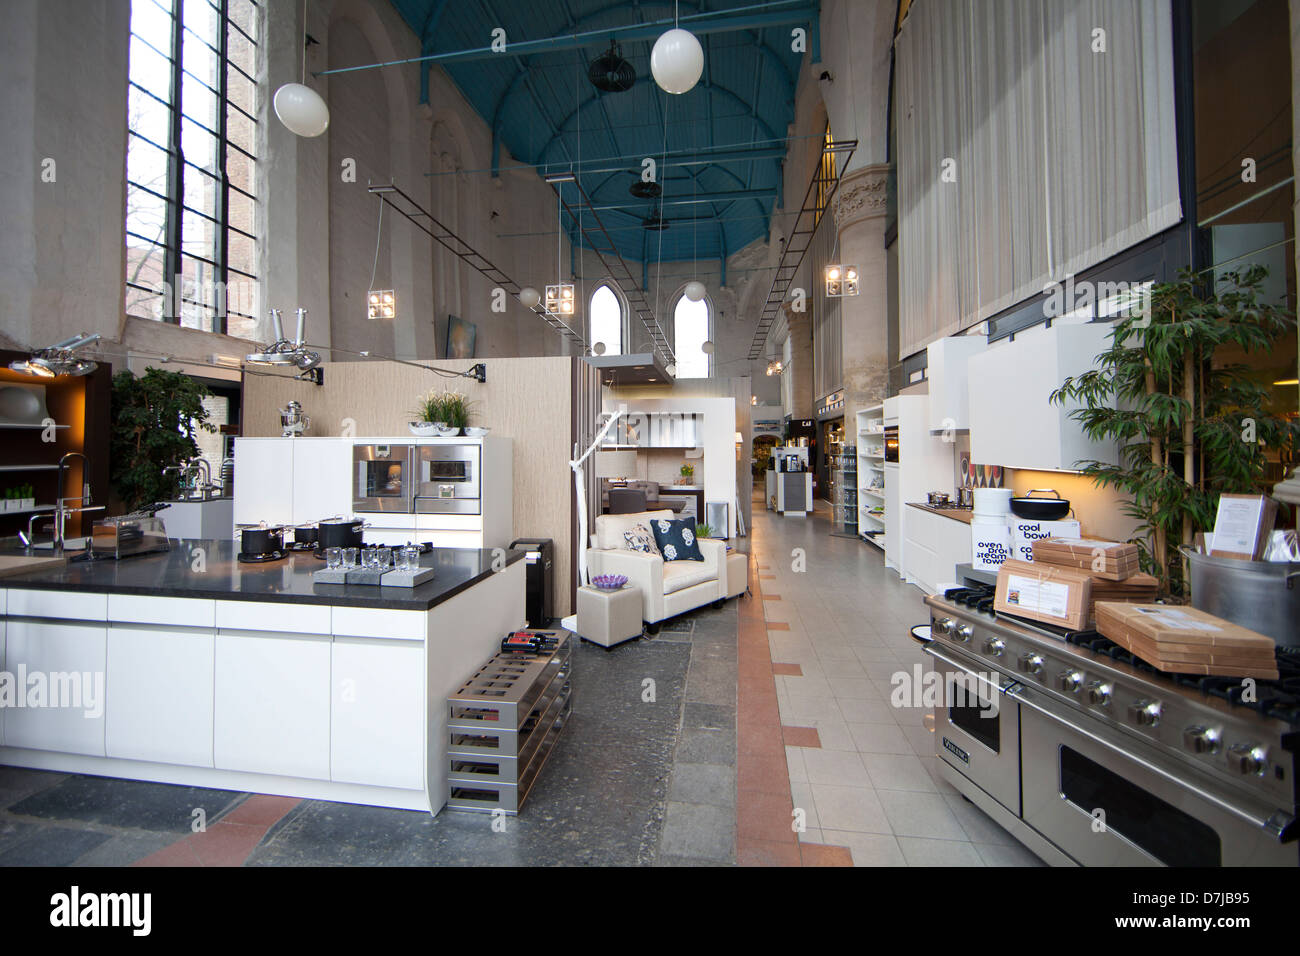 Küche-Shop in einer alten Kirche, Niederlande Stockfoto